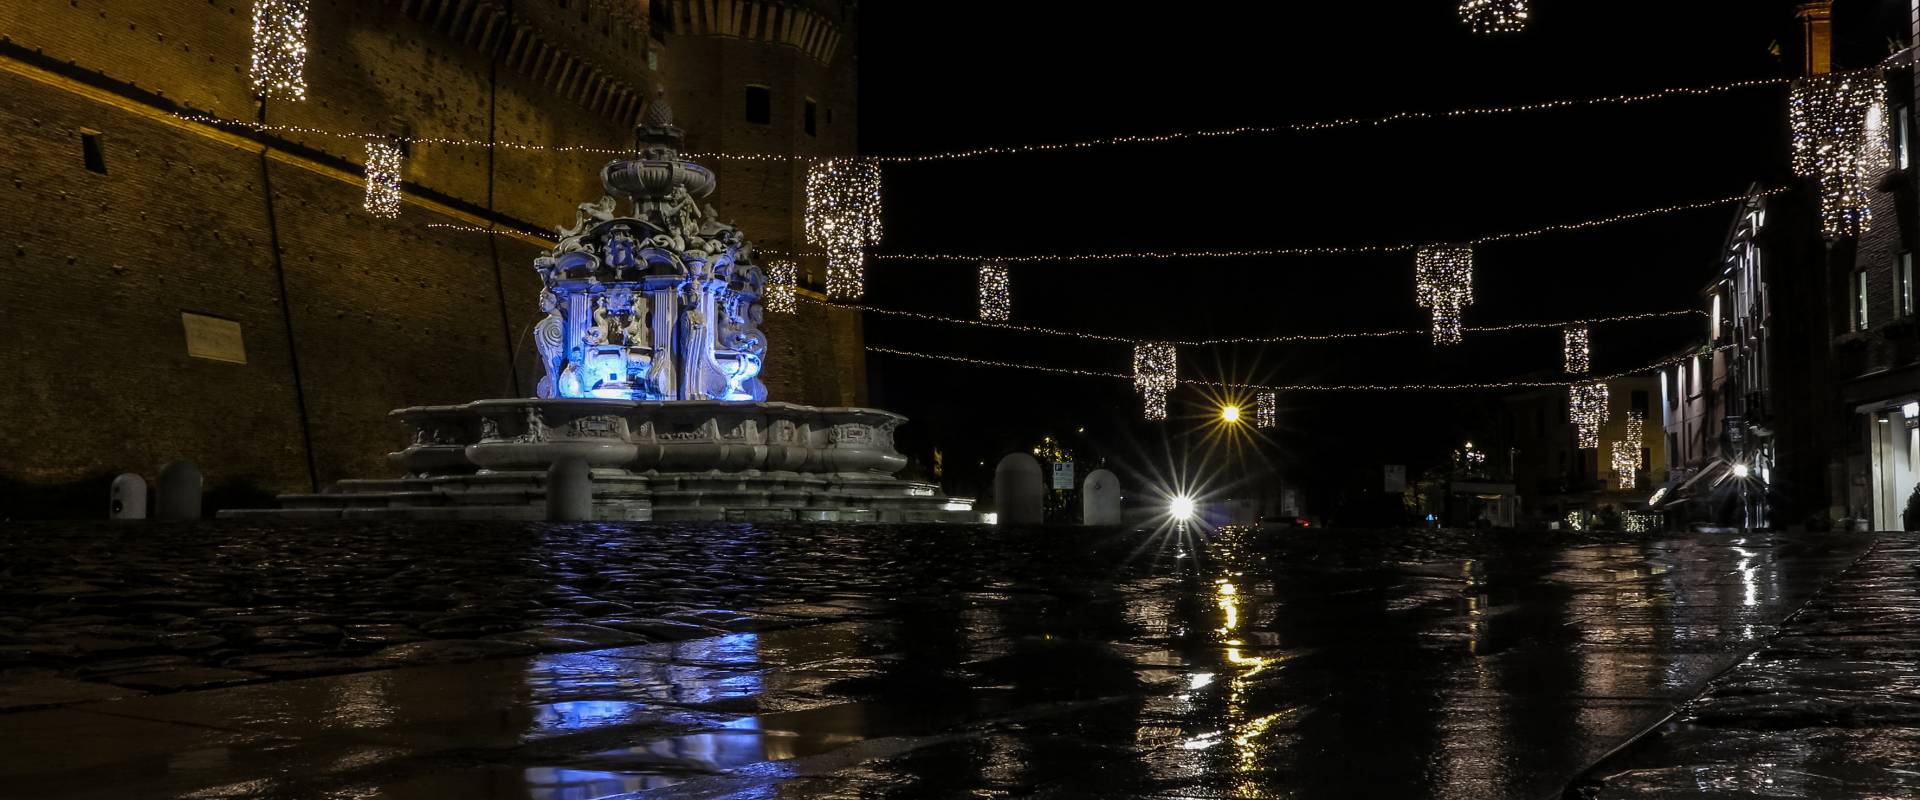 Piazza del Popolo nel periodo natalizio - 1 photo by Pierpaoloturchi